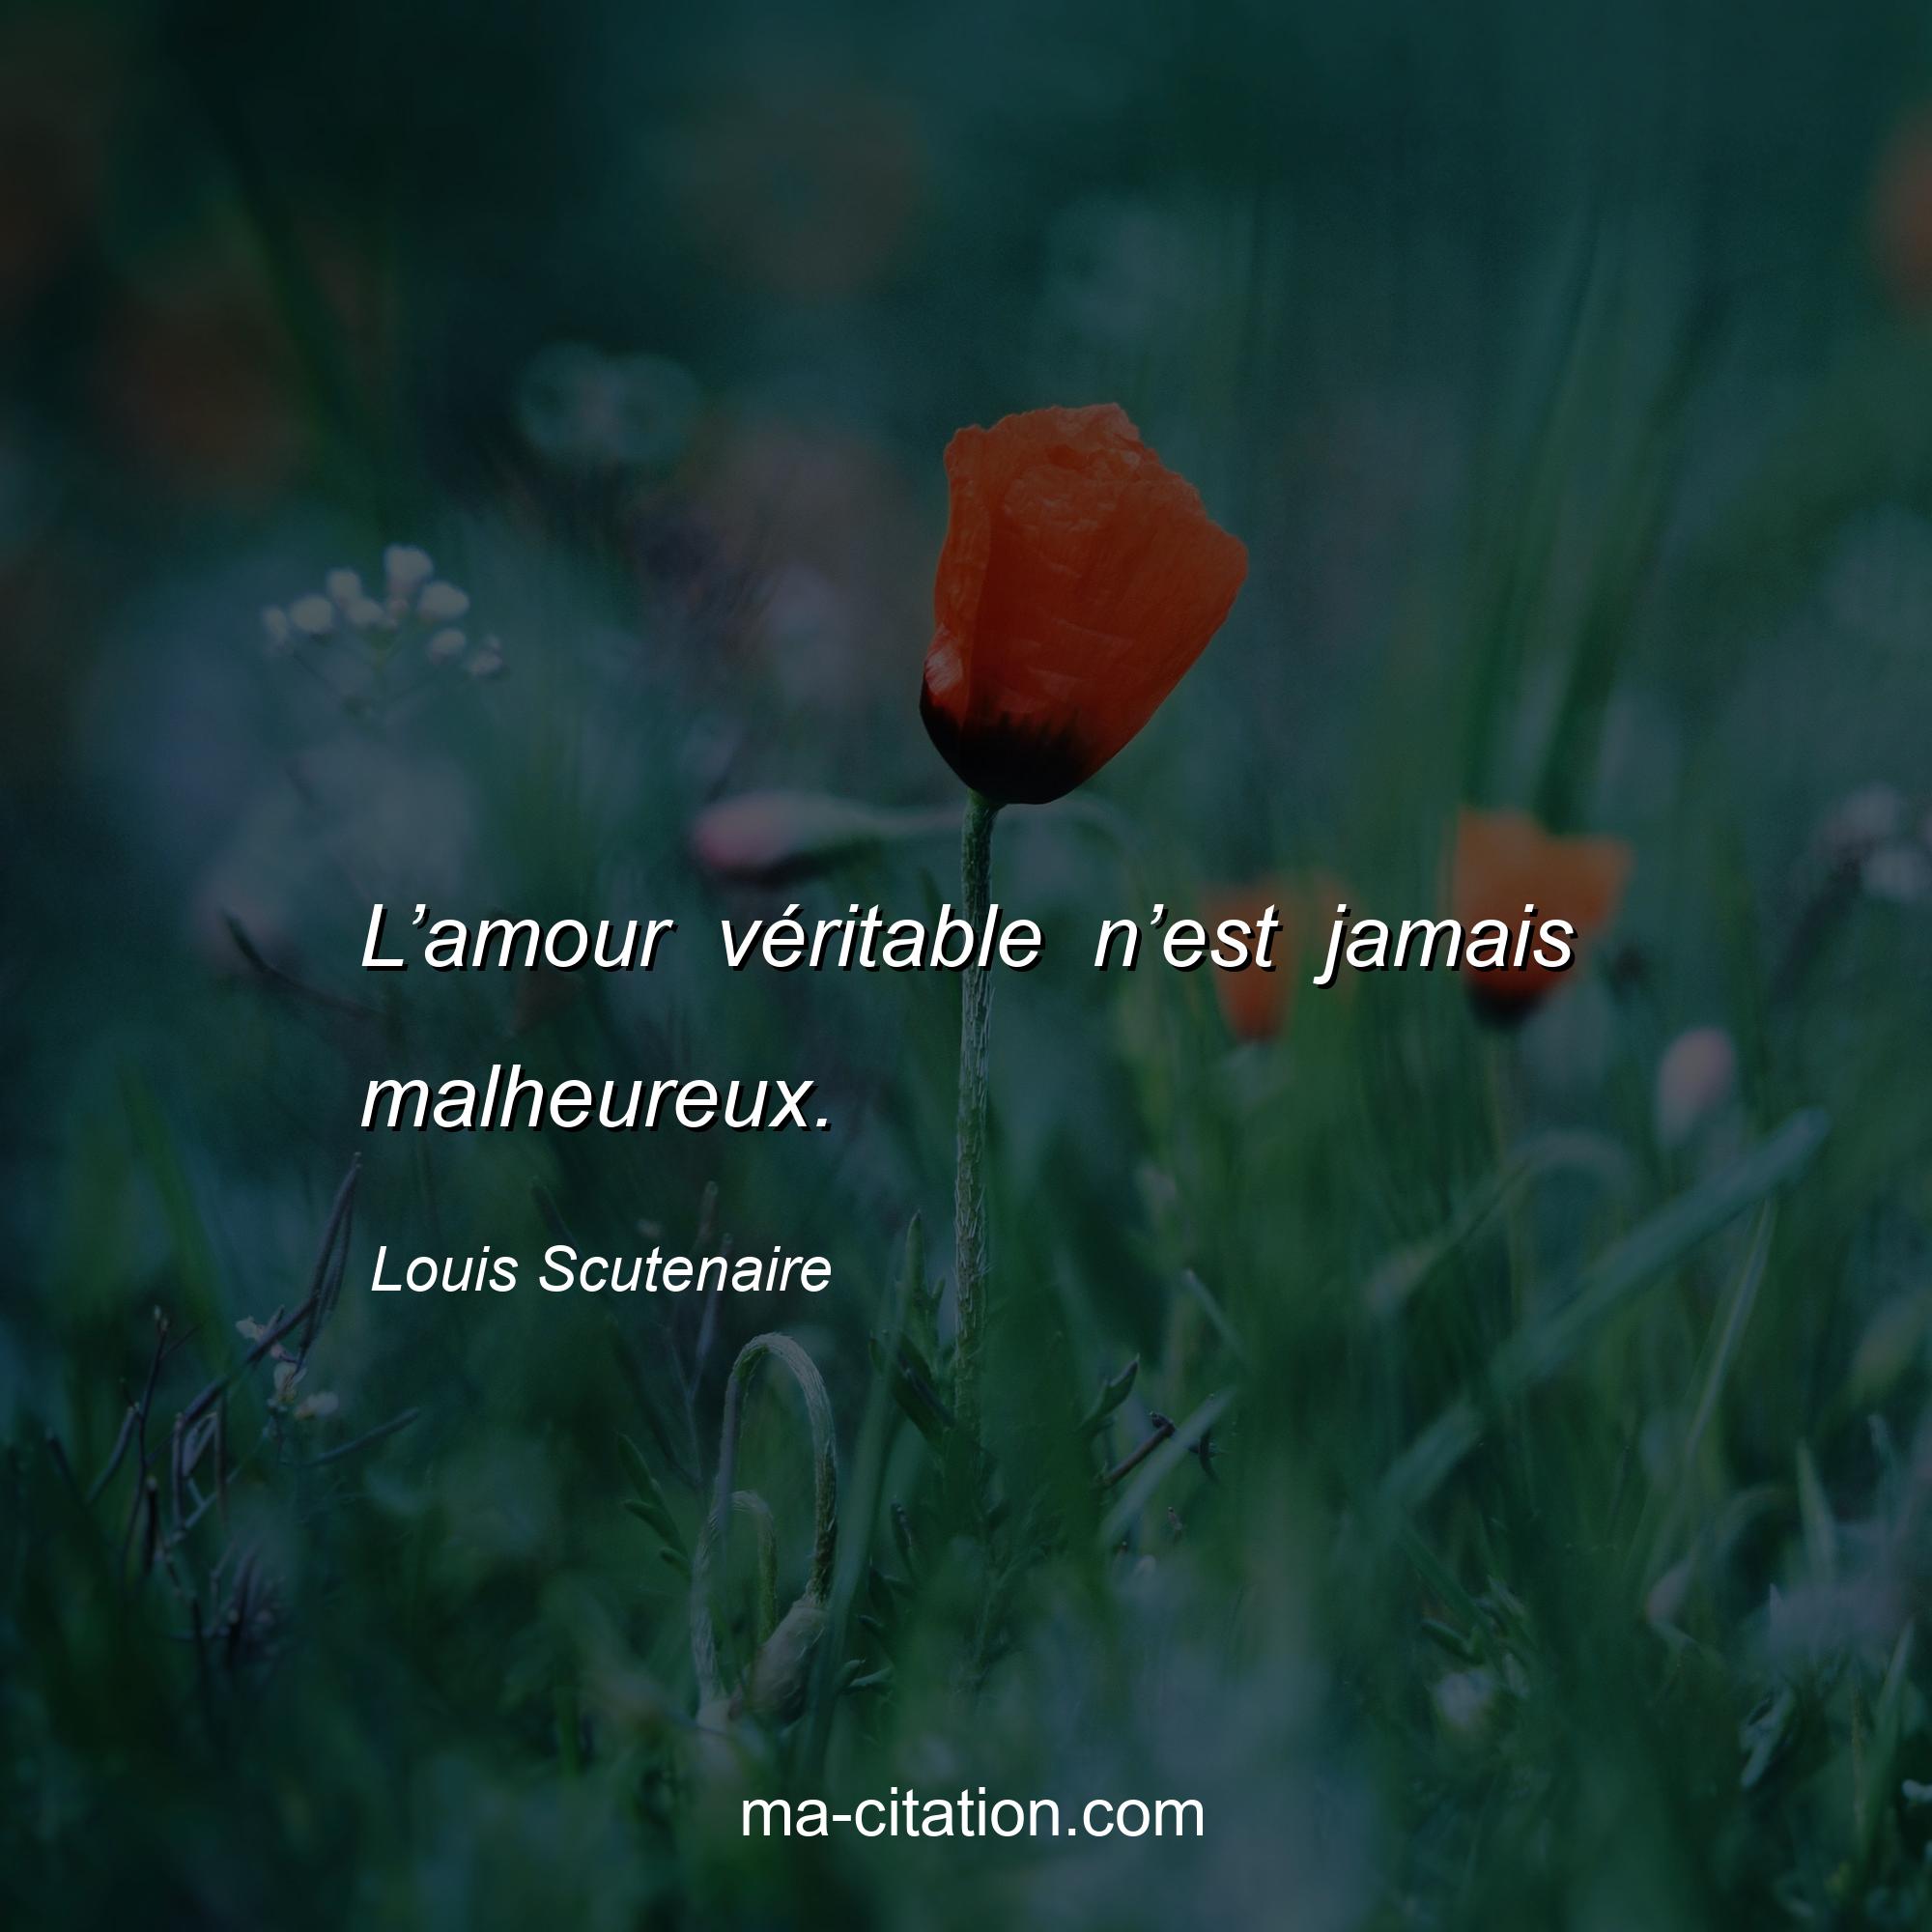 Louis Scutenaire : L’amour véritable n’est jamais malheureux.